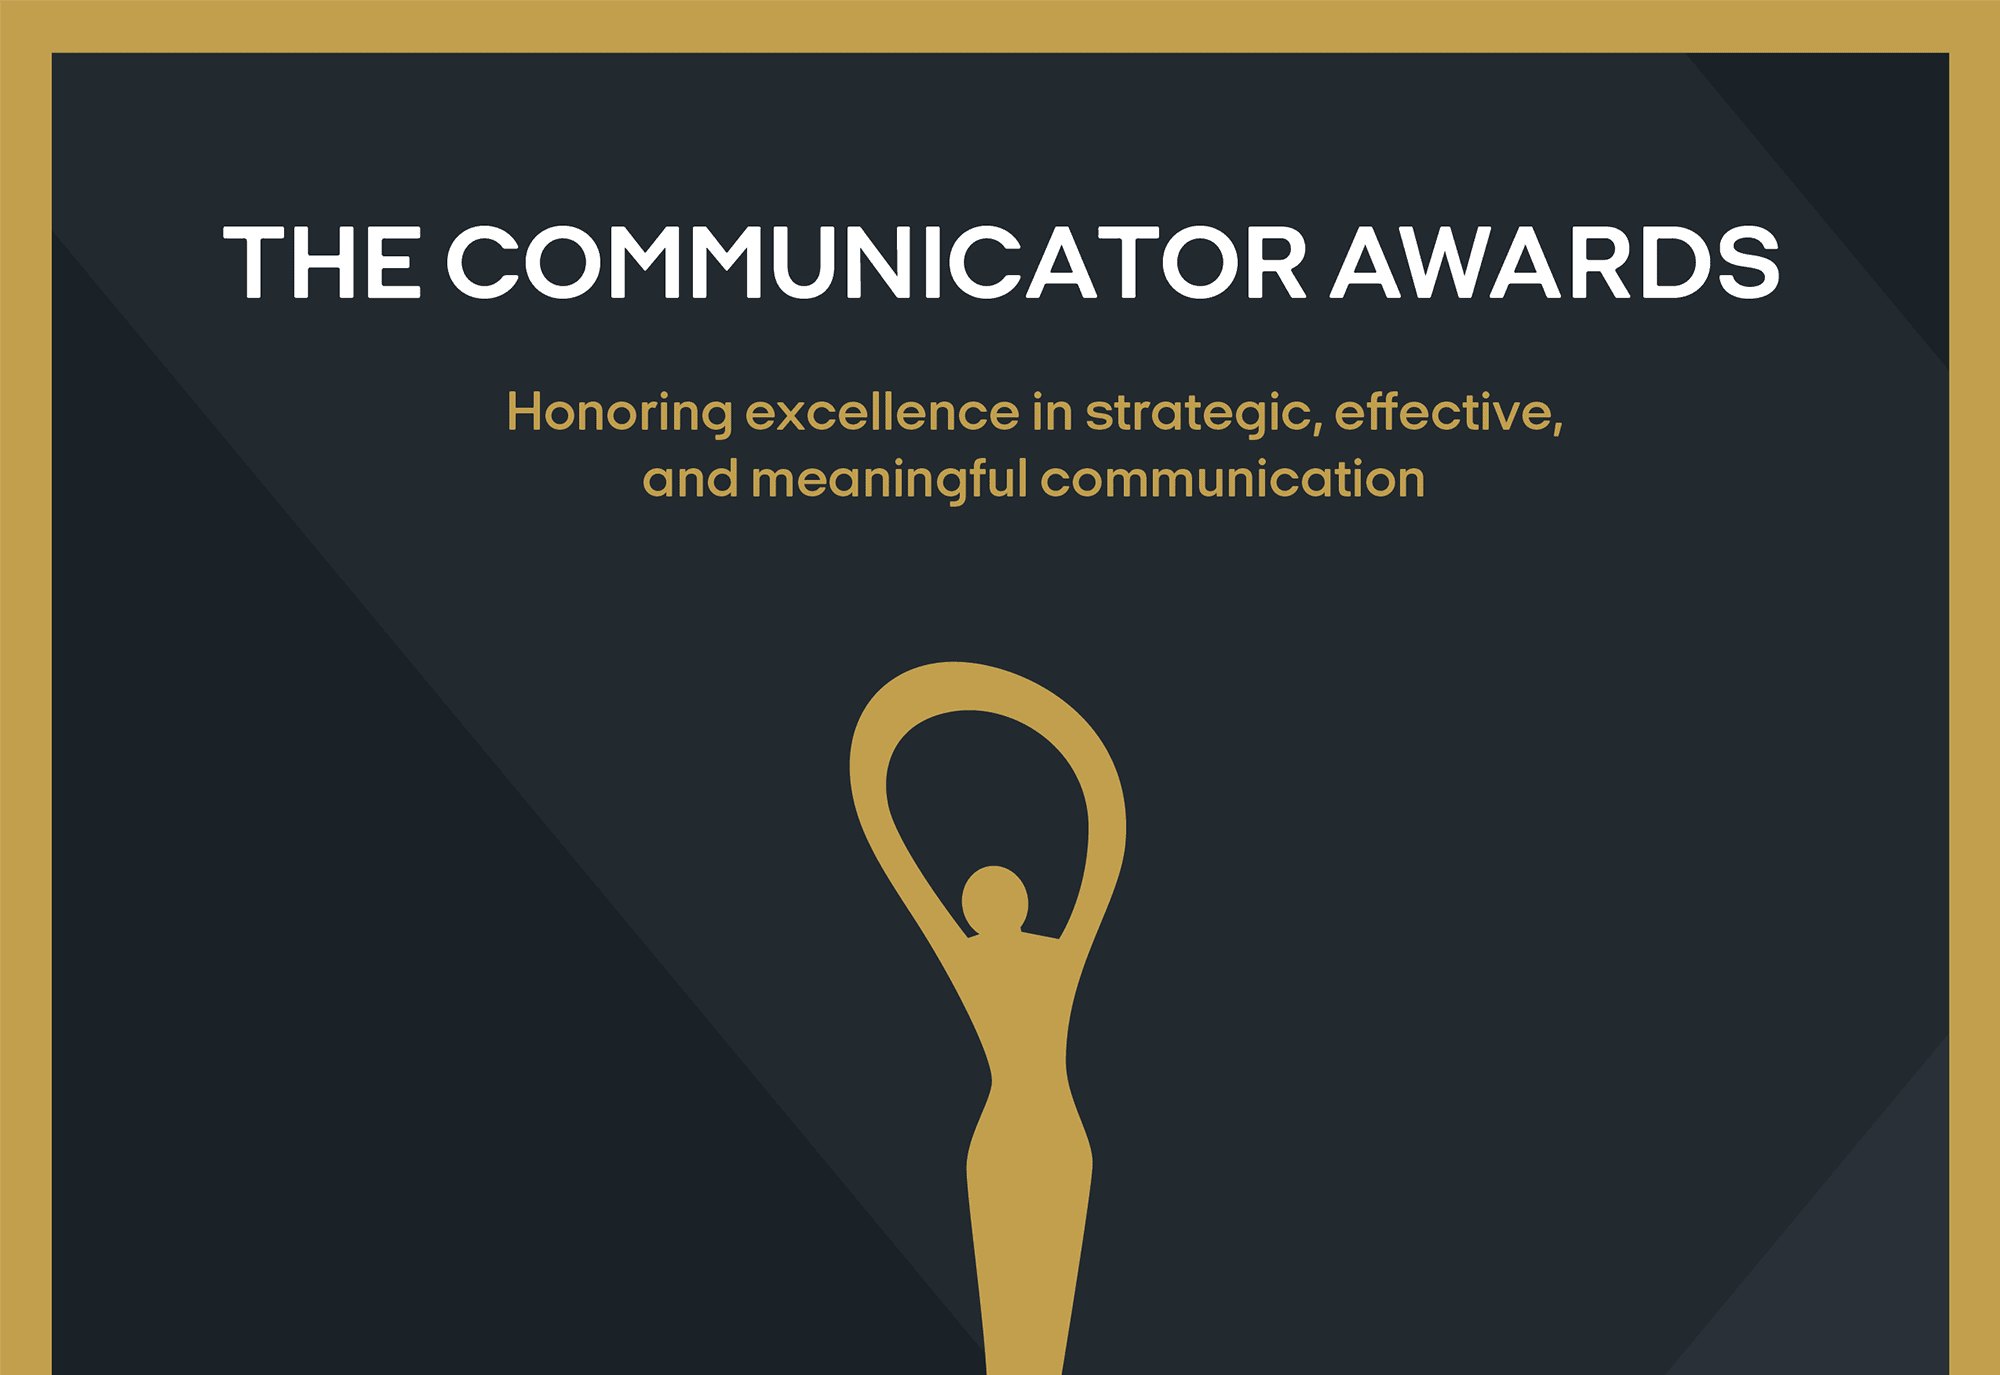 Communicator Awards Feature Image